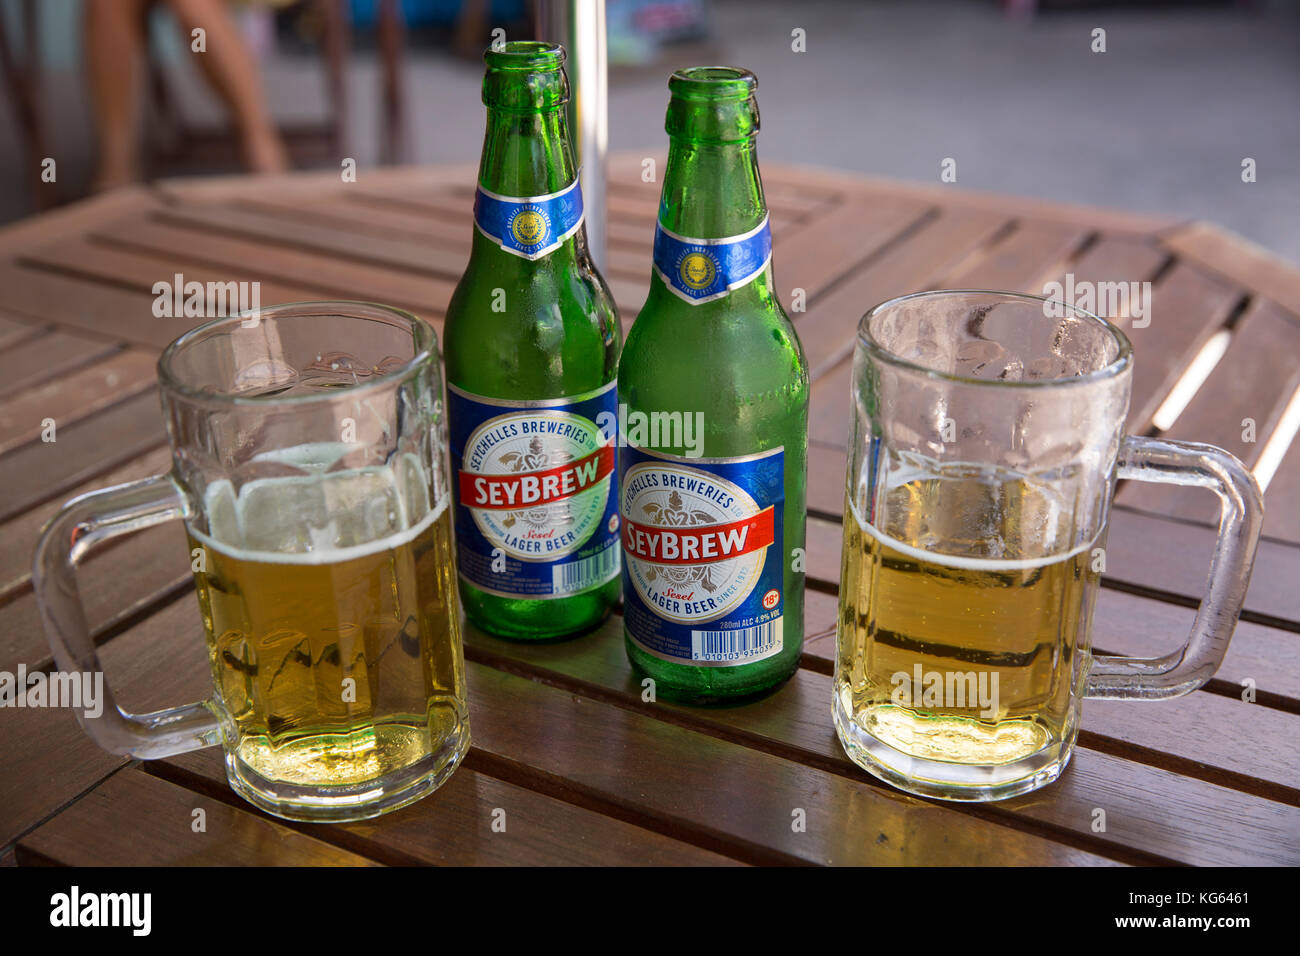 Les Seychelles, Praslin, Baie St Anne, bouteilles et verres de bière Seybrew sur table restaurant à emporter Banque D'Images